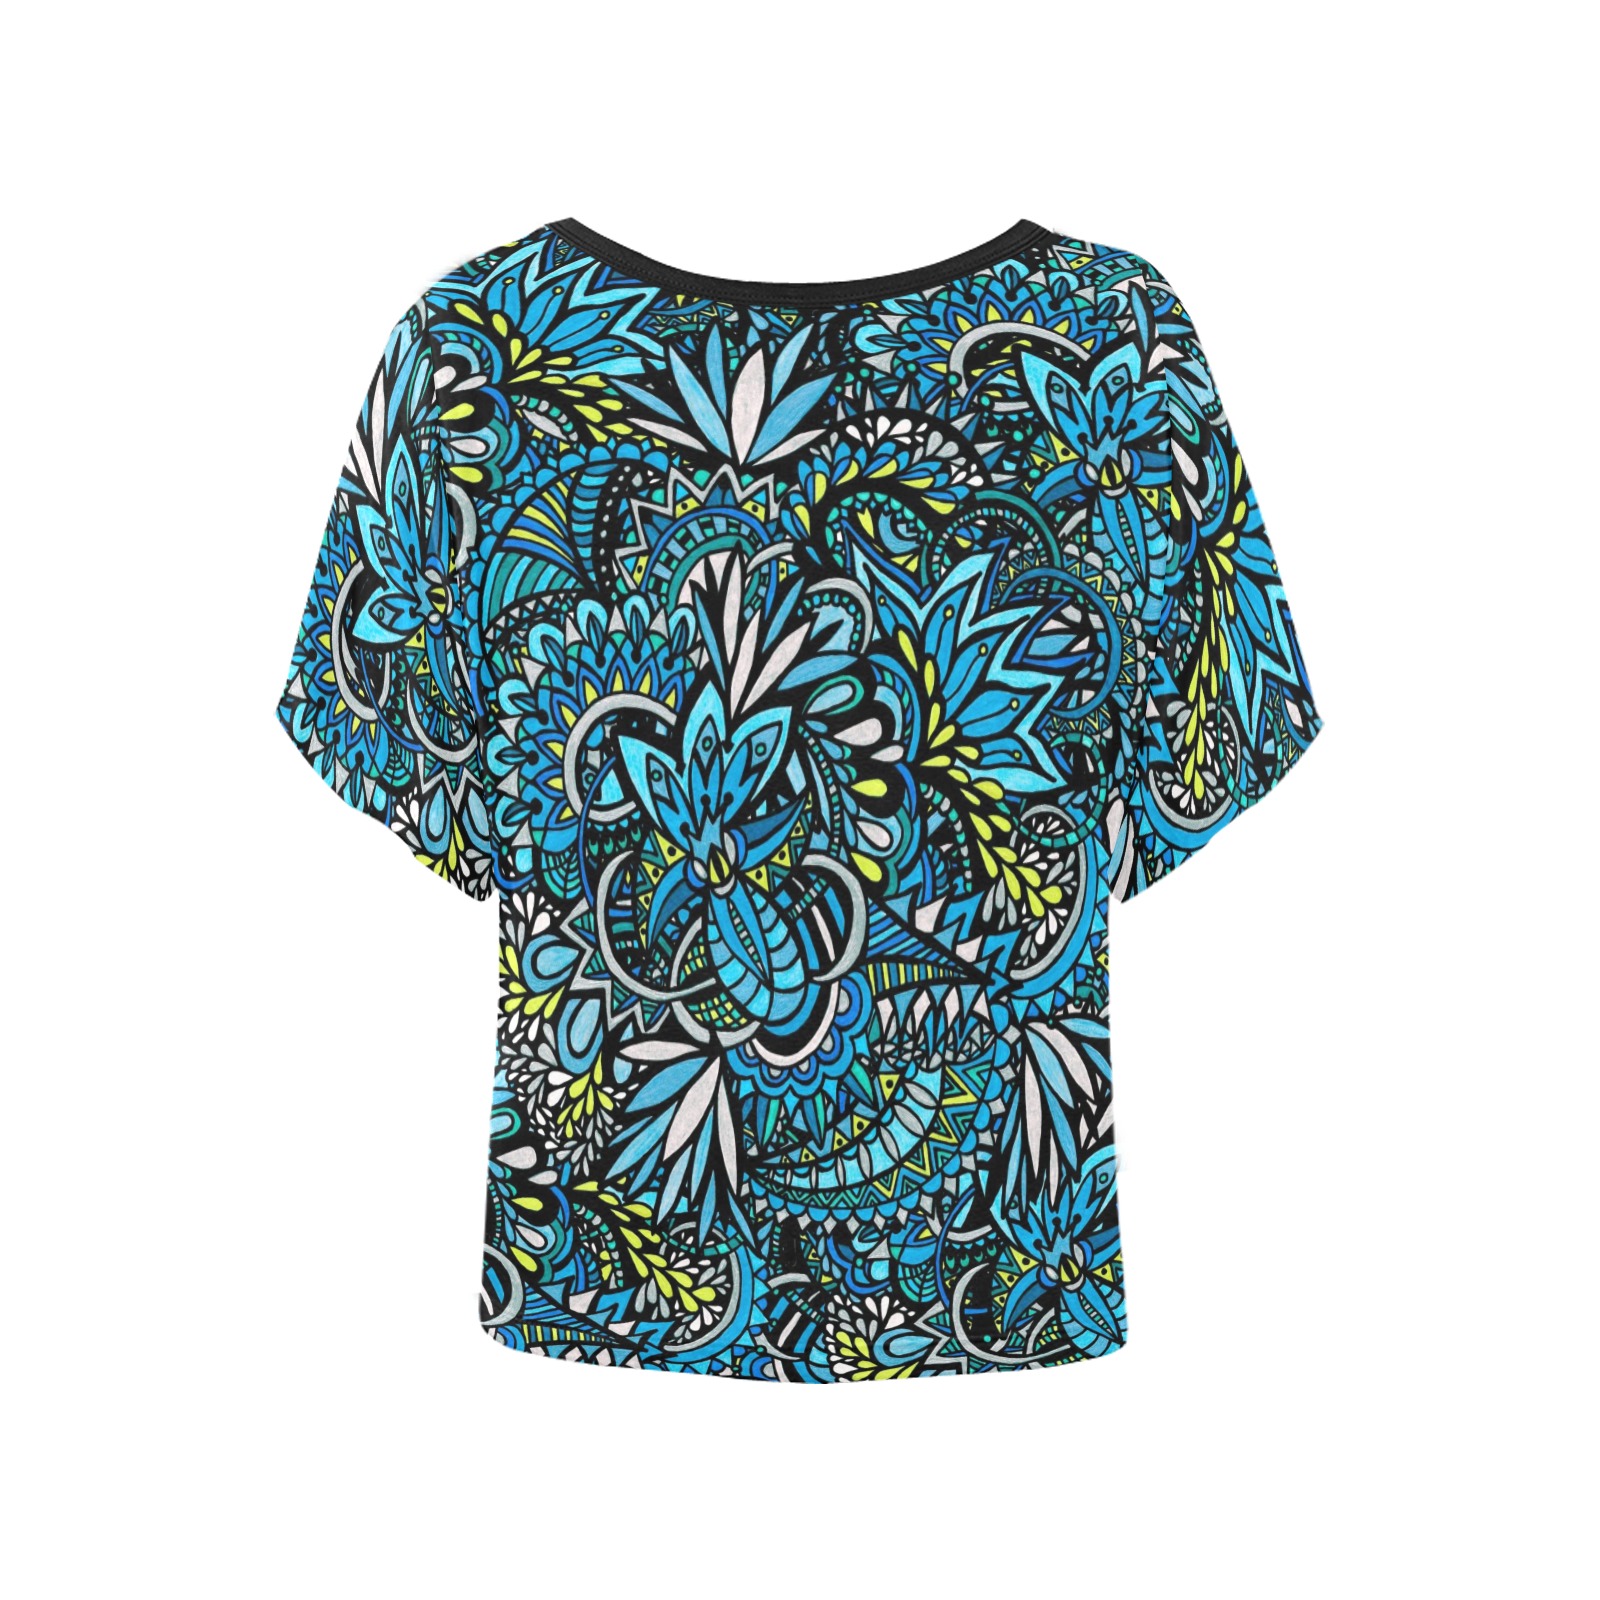 Cerulean Swirls Women's Batwing-Sleeved Blouse T shirt (Model T44)